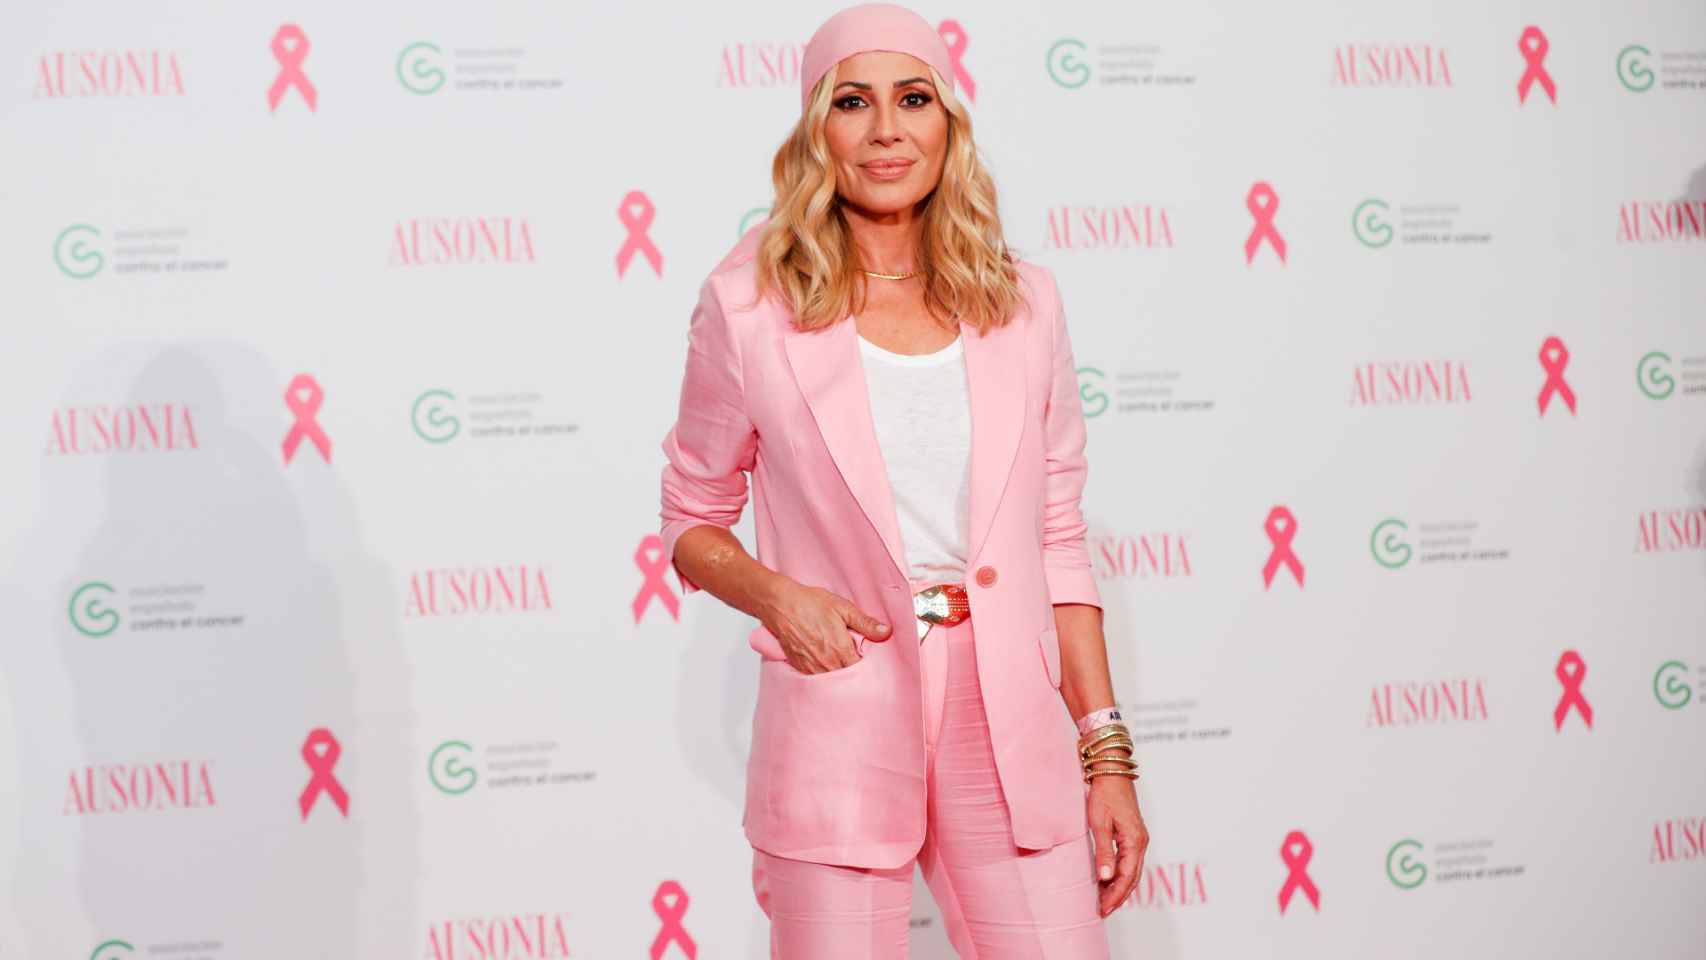 La cantante es imagen de la campaña contra el cáncer de Ausonia.